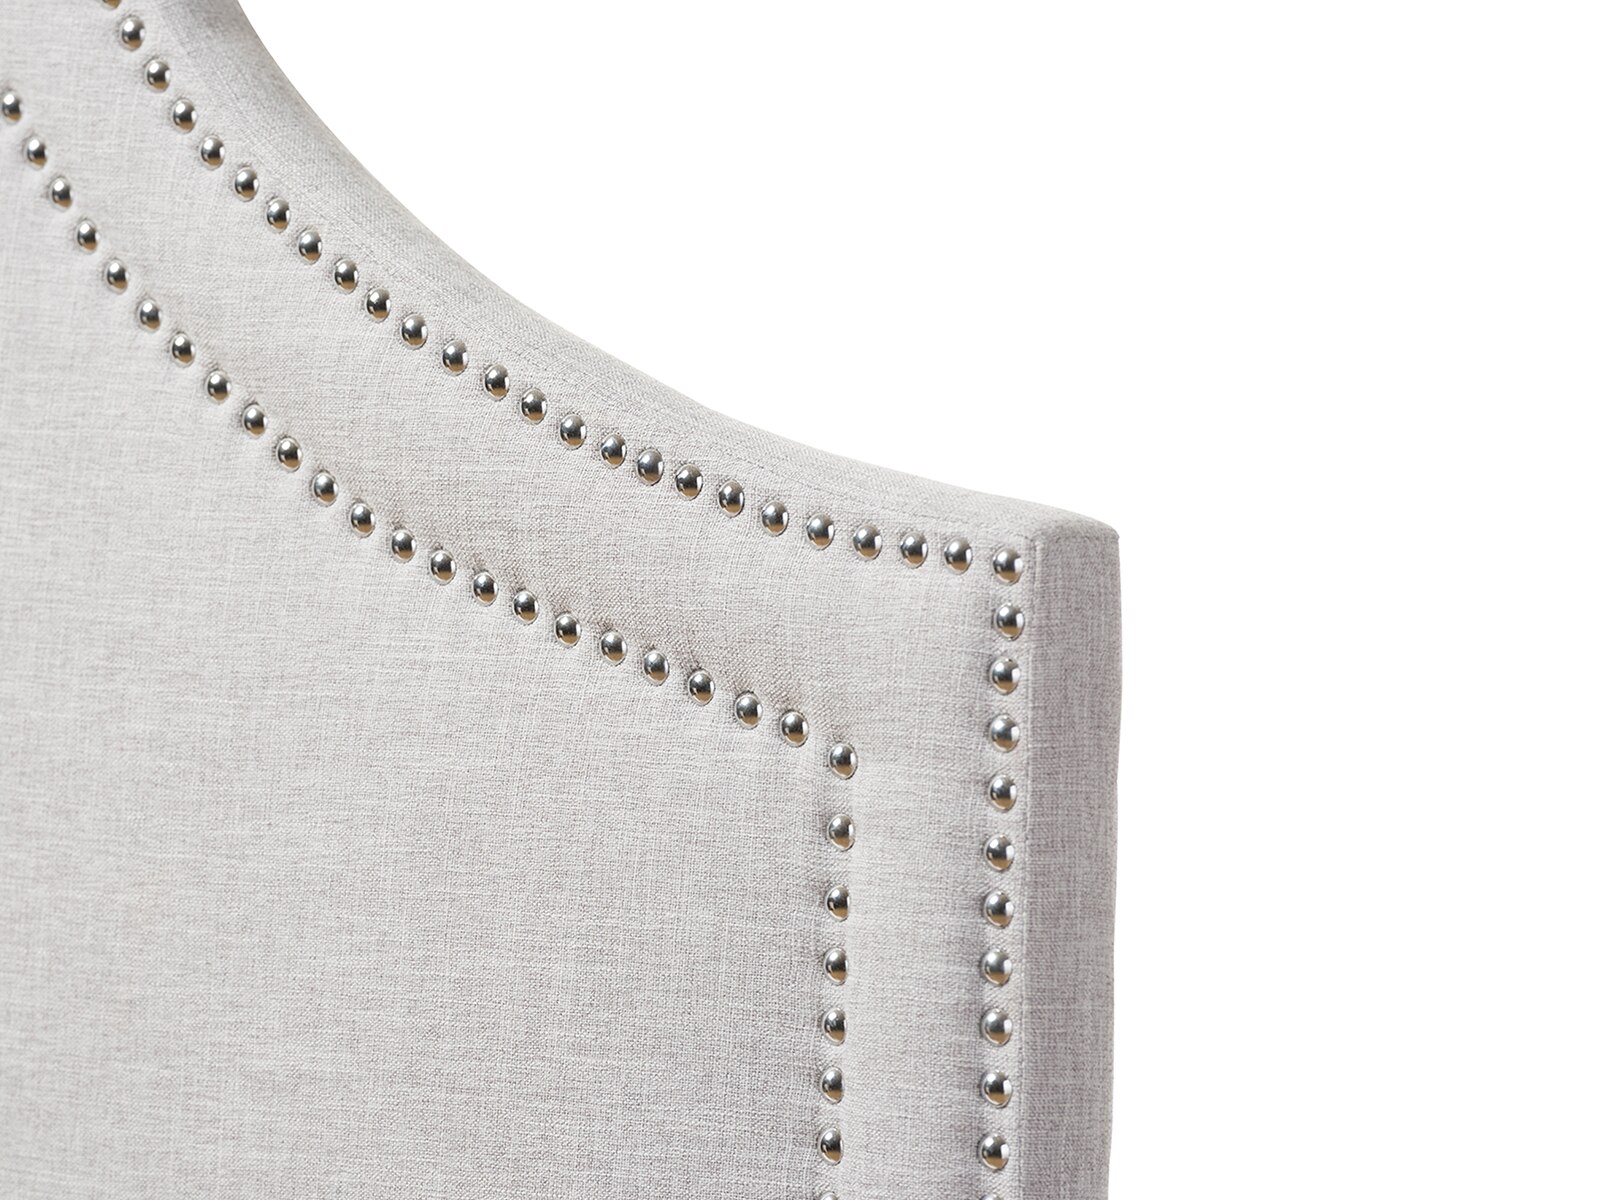 Avignon Fabric Upholstered Headboard